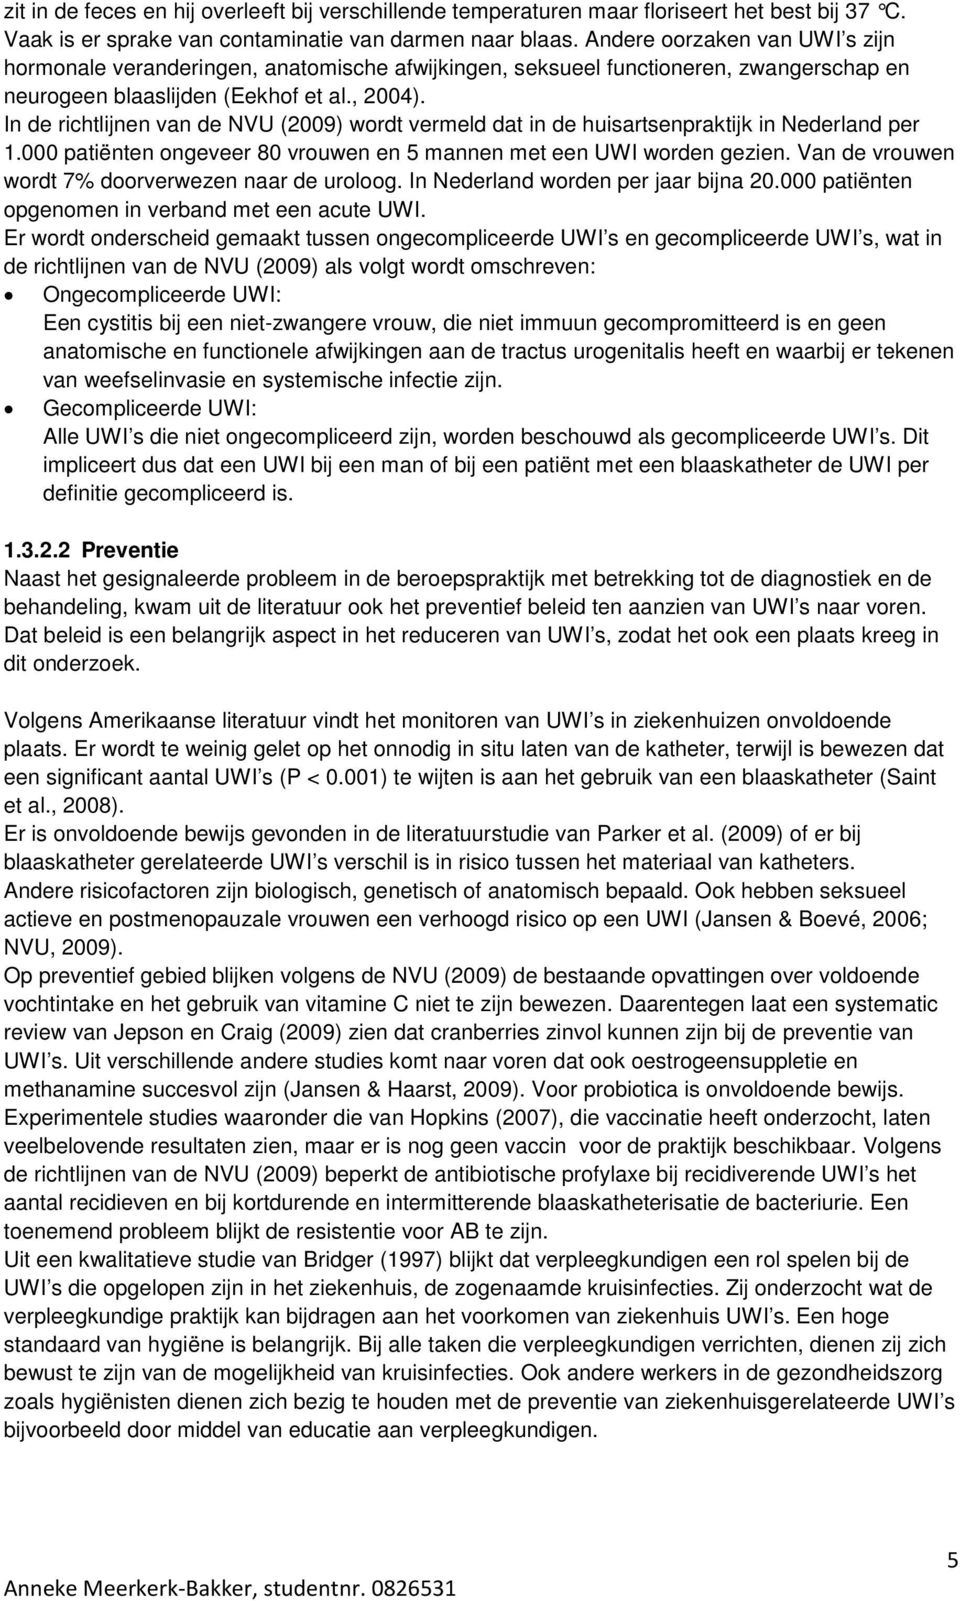 In de richtlijnen van de NVU (2009) wordt vermeld dat in de huisartsenpraktijk in Nederland per 1.000 patiënten ongeveer 80 vrouwen en 5 mannen met een UWI worden gezien.